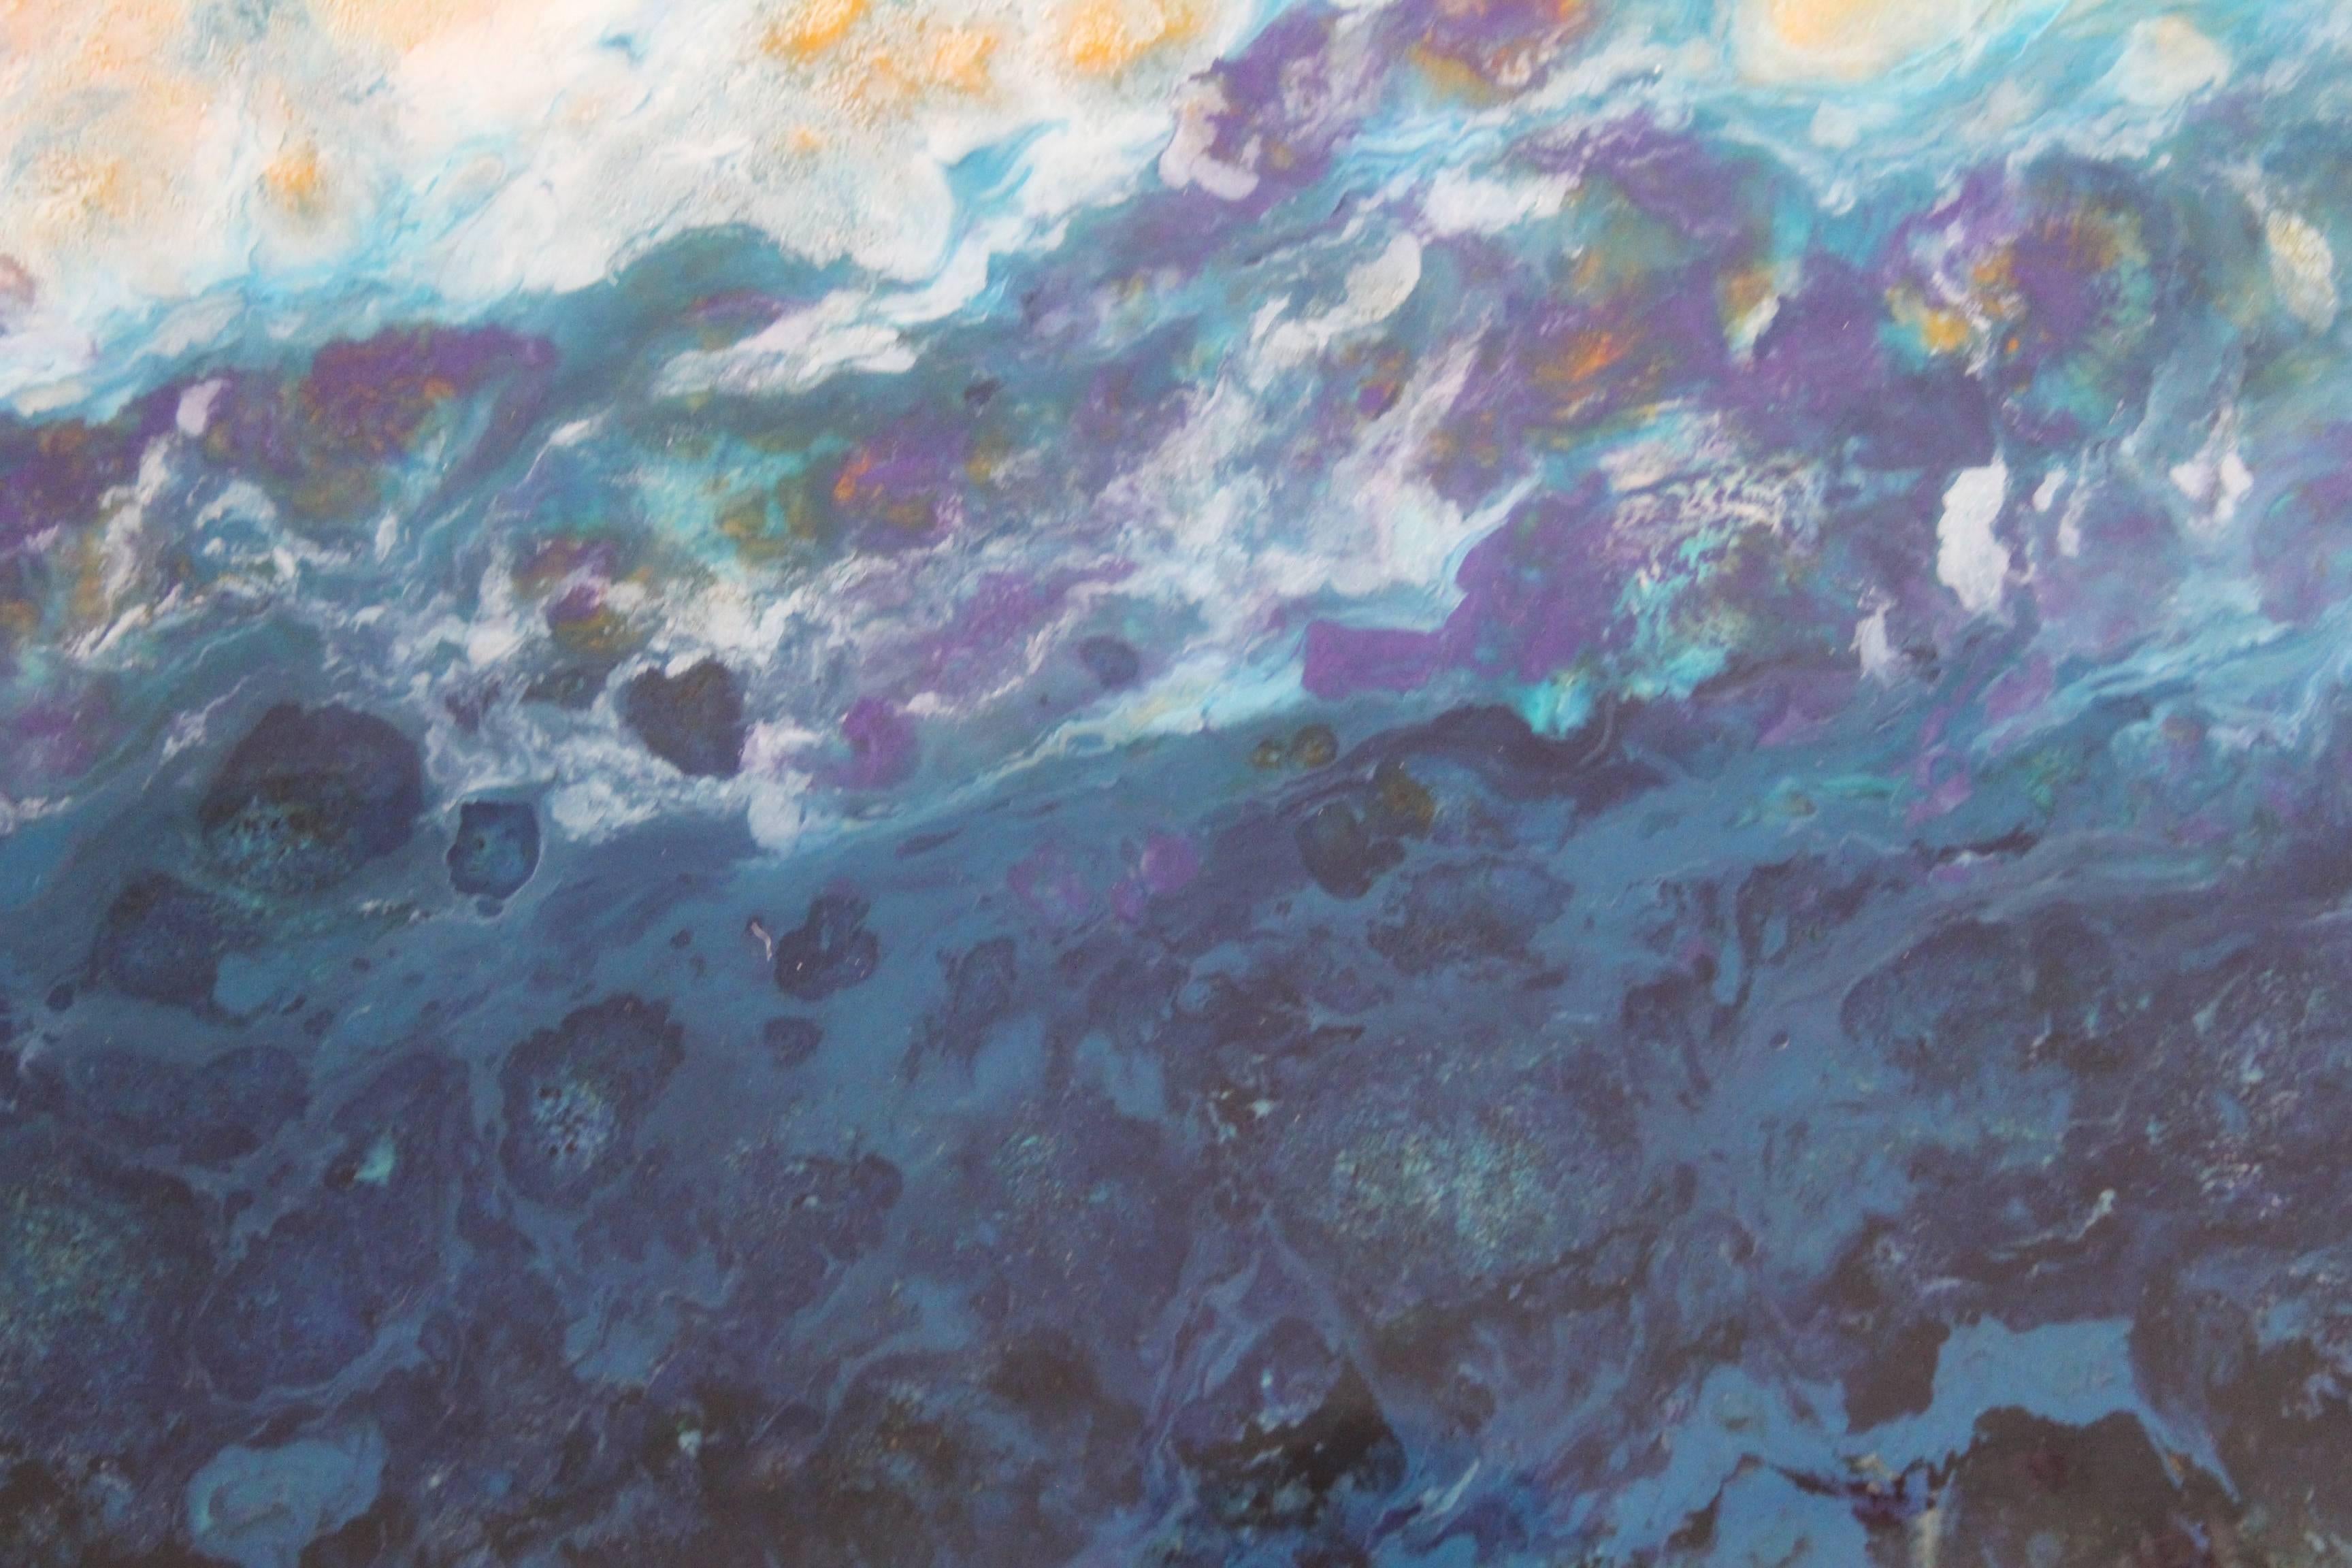 Lac Trouser ist ein buntes Gemälde in Mischtechnik.  Es ist ein Öl- und Pigmentgemälde auf Holzplatte mit einer hochglänzenden Oberfläche.  Dieses Diptychon ist 20x40.  Sie ist voll von schönen Rosatönen, Weiß und Blau.

Die kanadische Künstlerin